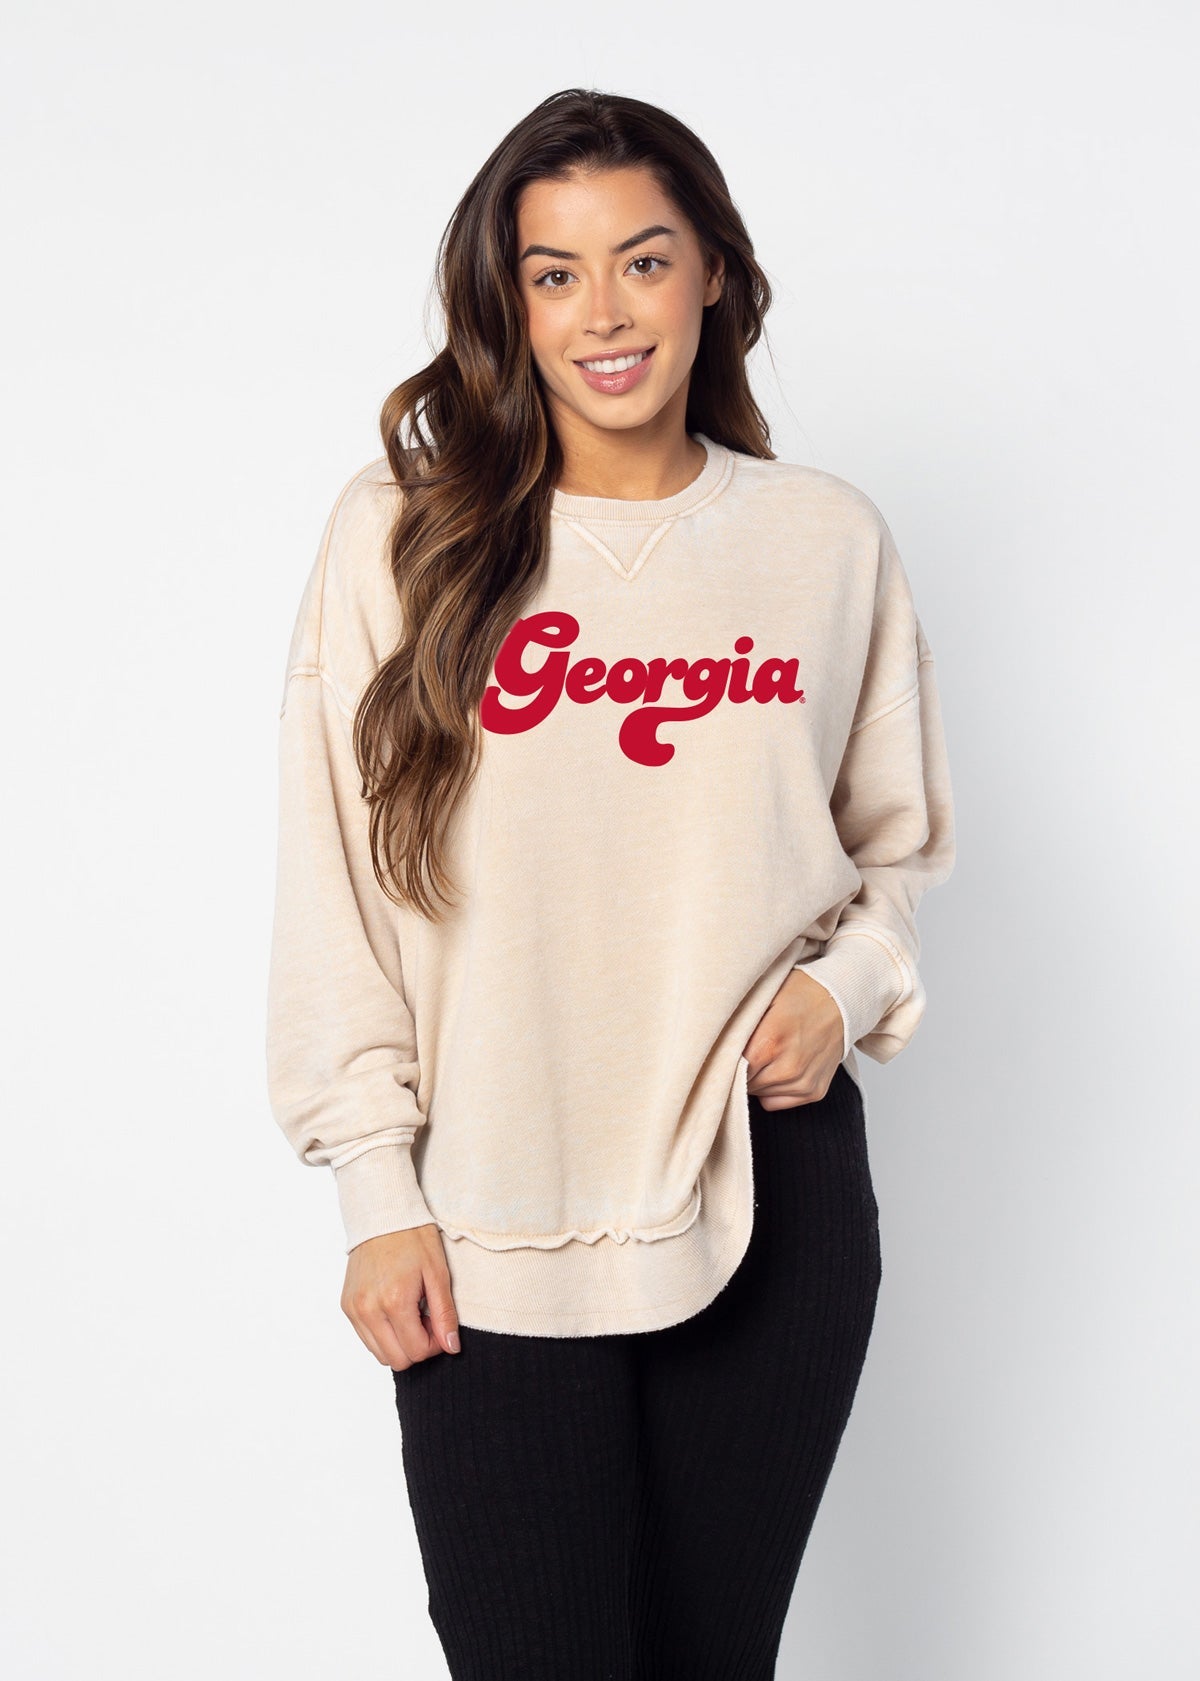 Georgia Bulldogs sweatshirt